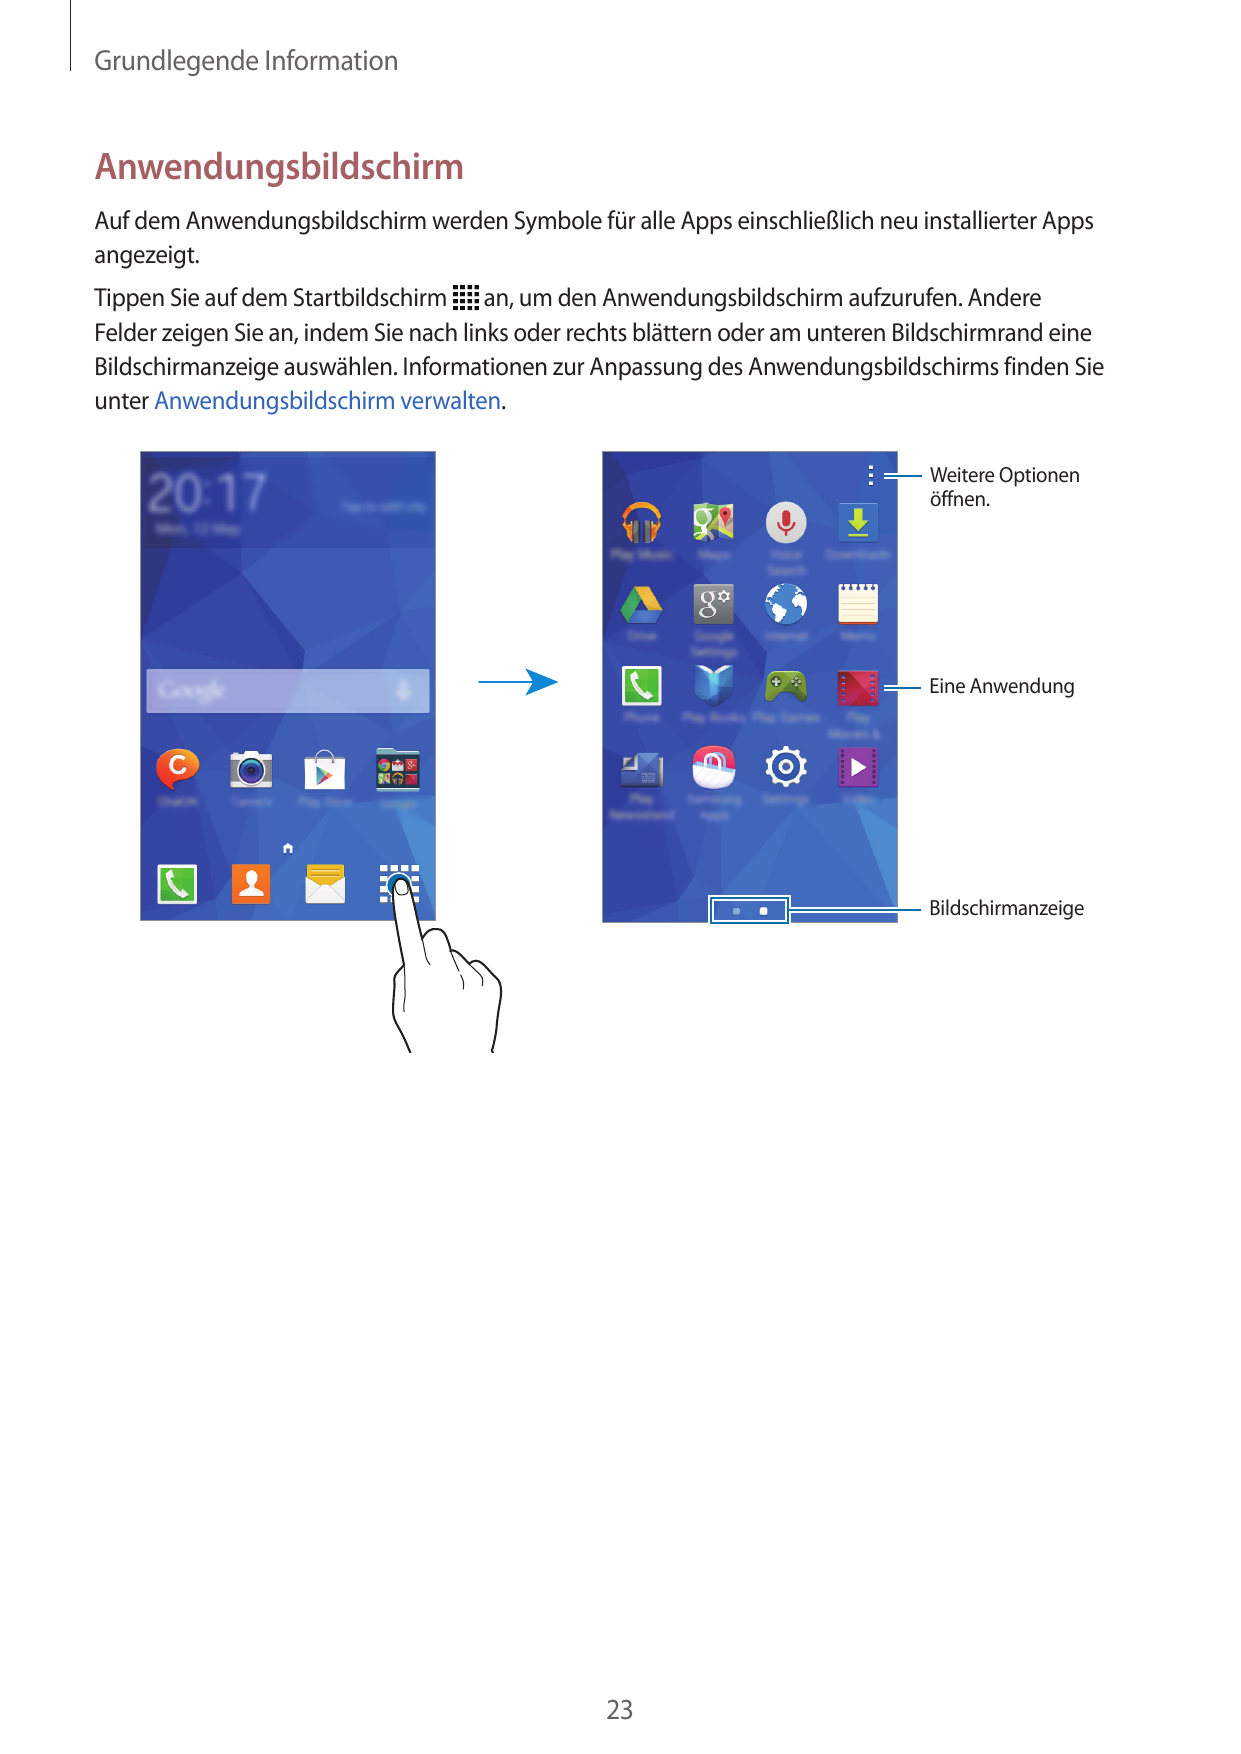 Grundlegende InformationAnwendungsbildschirmAuf dem Anwendungsbildschirm werden Symbole für alle Apps einschließlich neu install